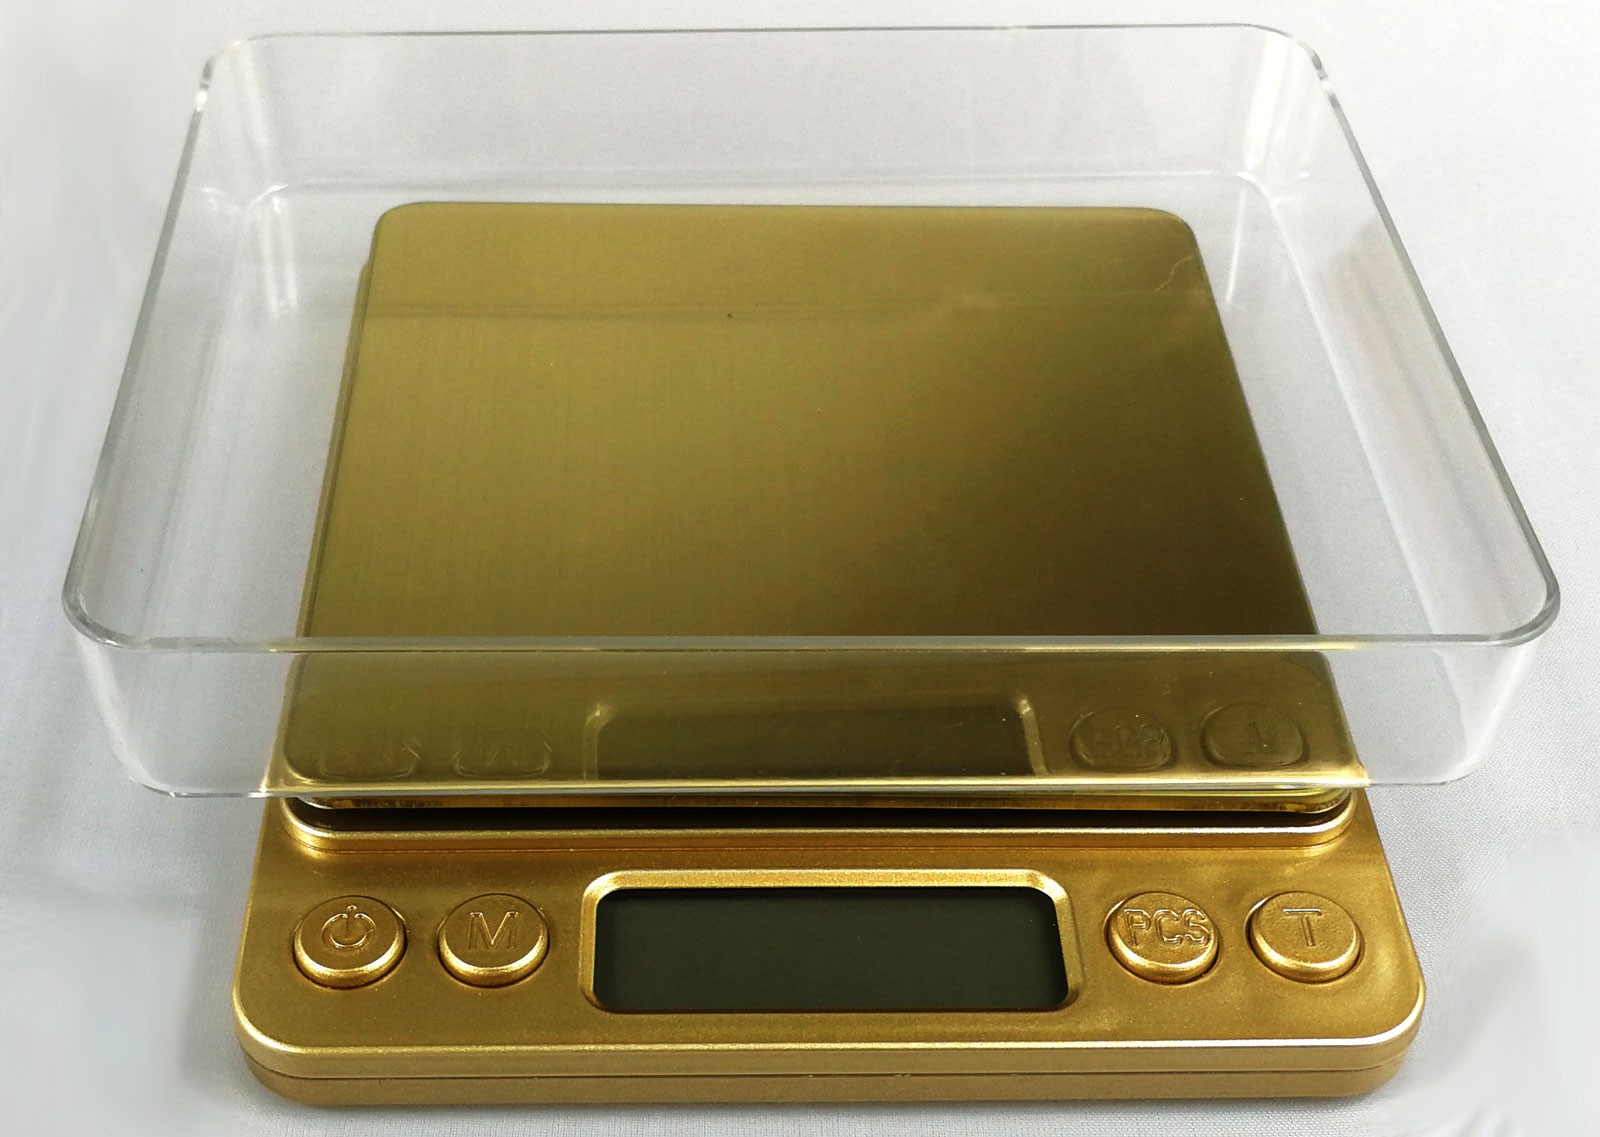 KL-I2000 golden digitální váha do 3kg s přesností 0,1g